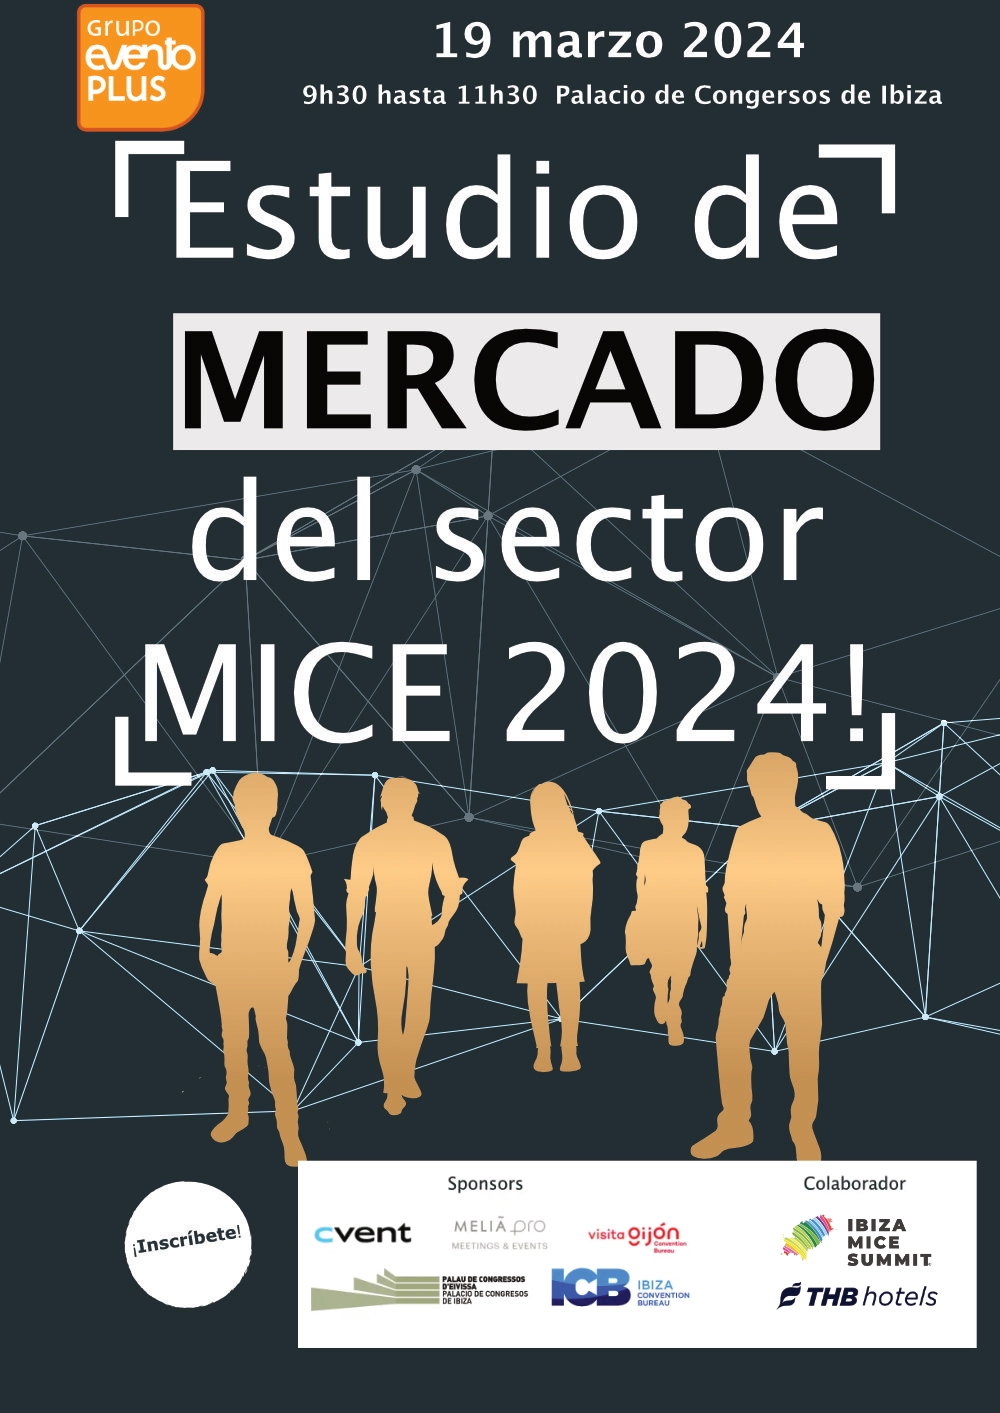 la presentación de tendencias del Estudio de Mercado MICE en Palacio de Congresos de Ibiza - 19 marzo, 2024